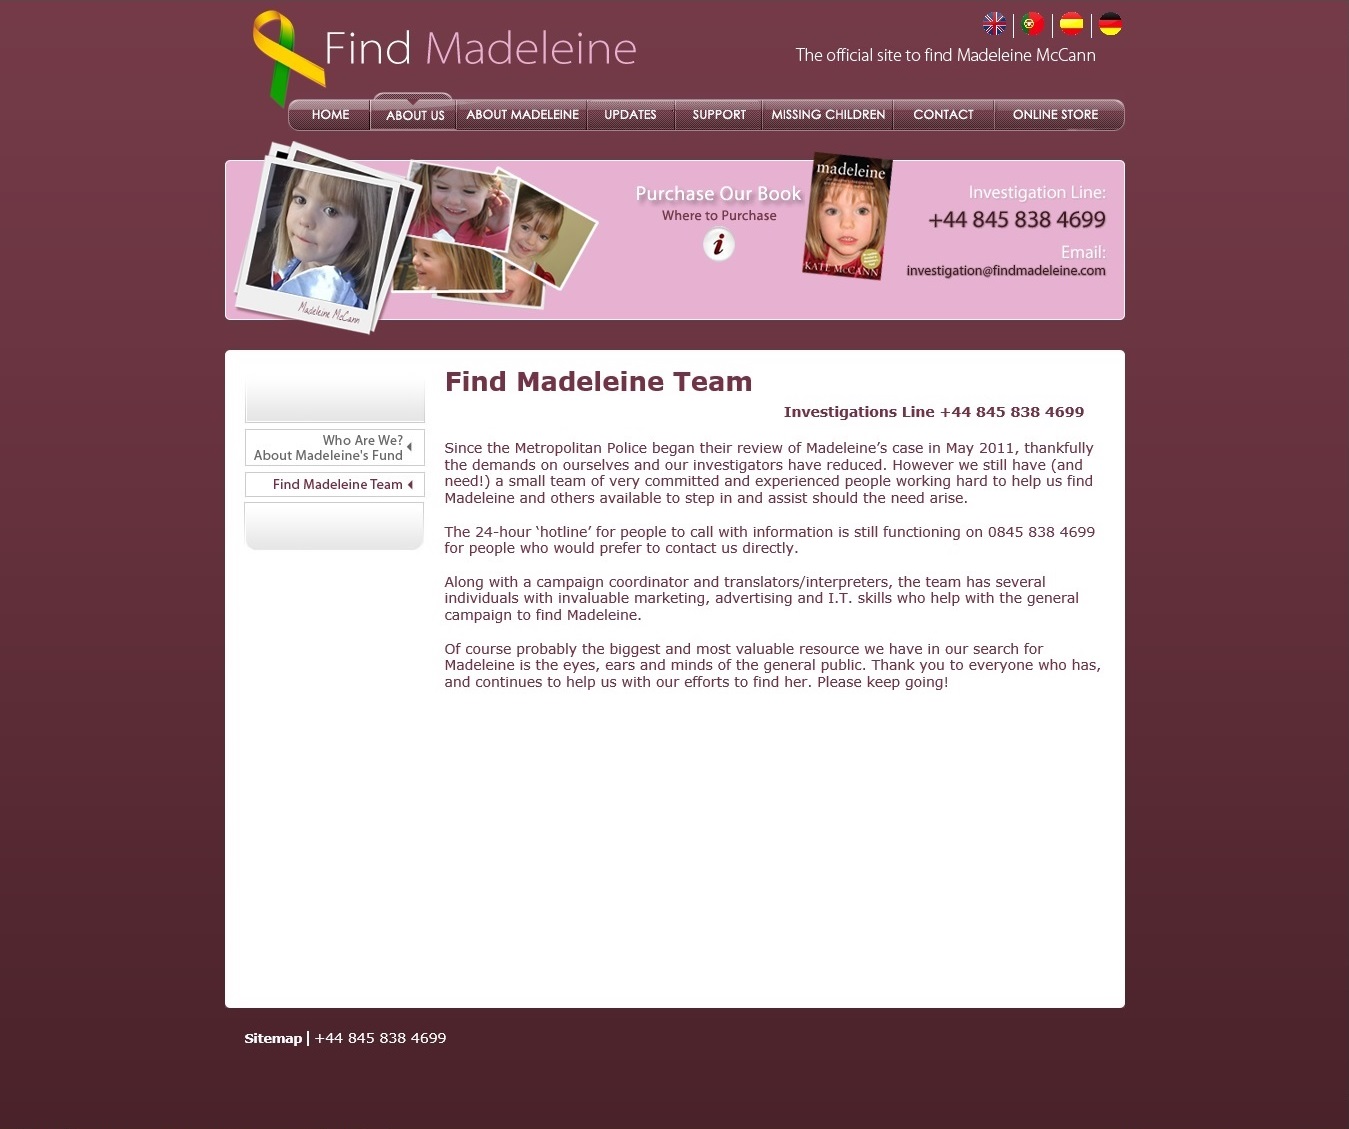 Find Madeleine Team announcement, 17 June 2012